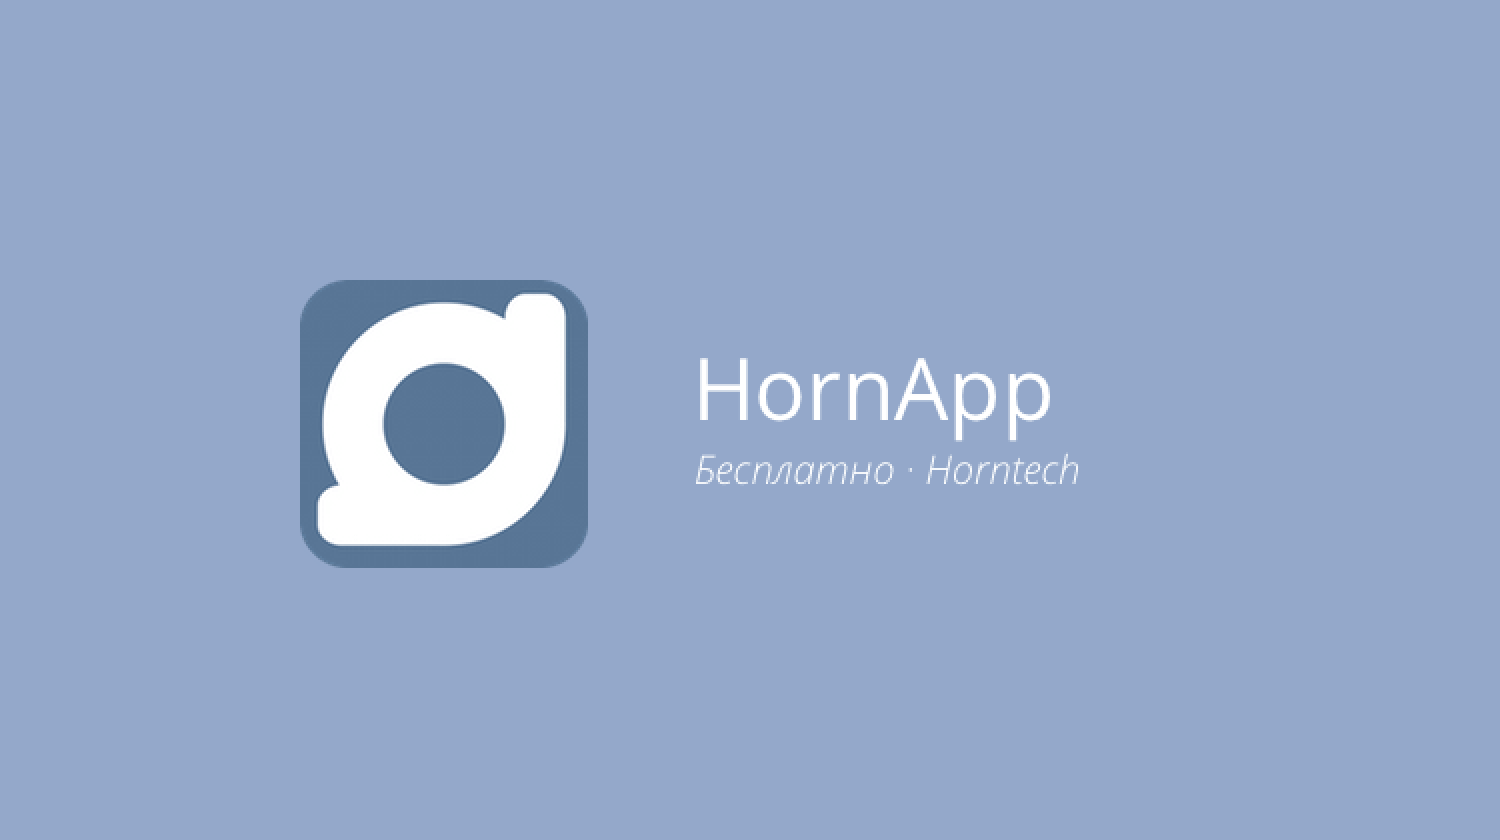 HornApp